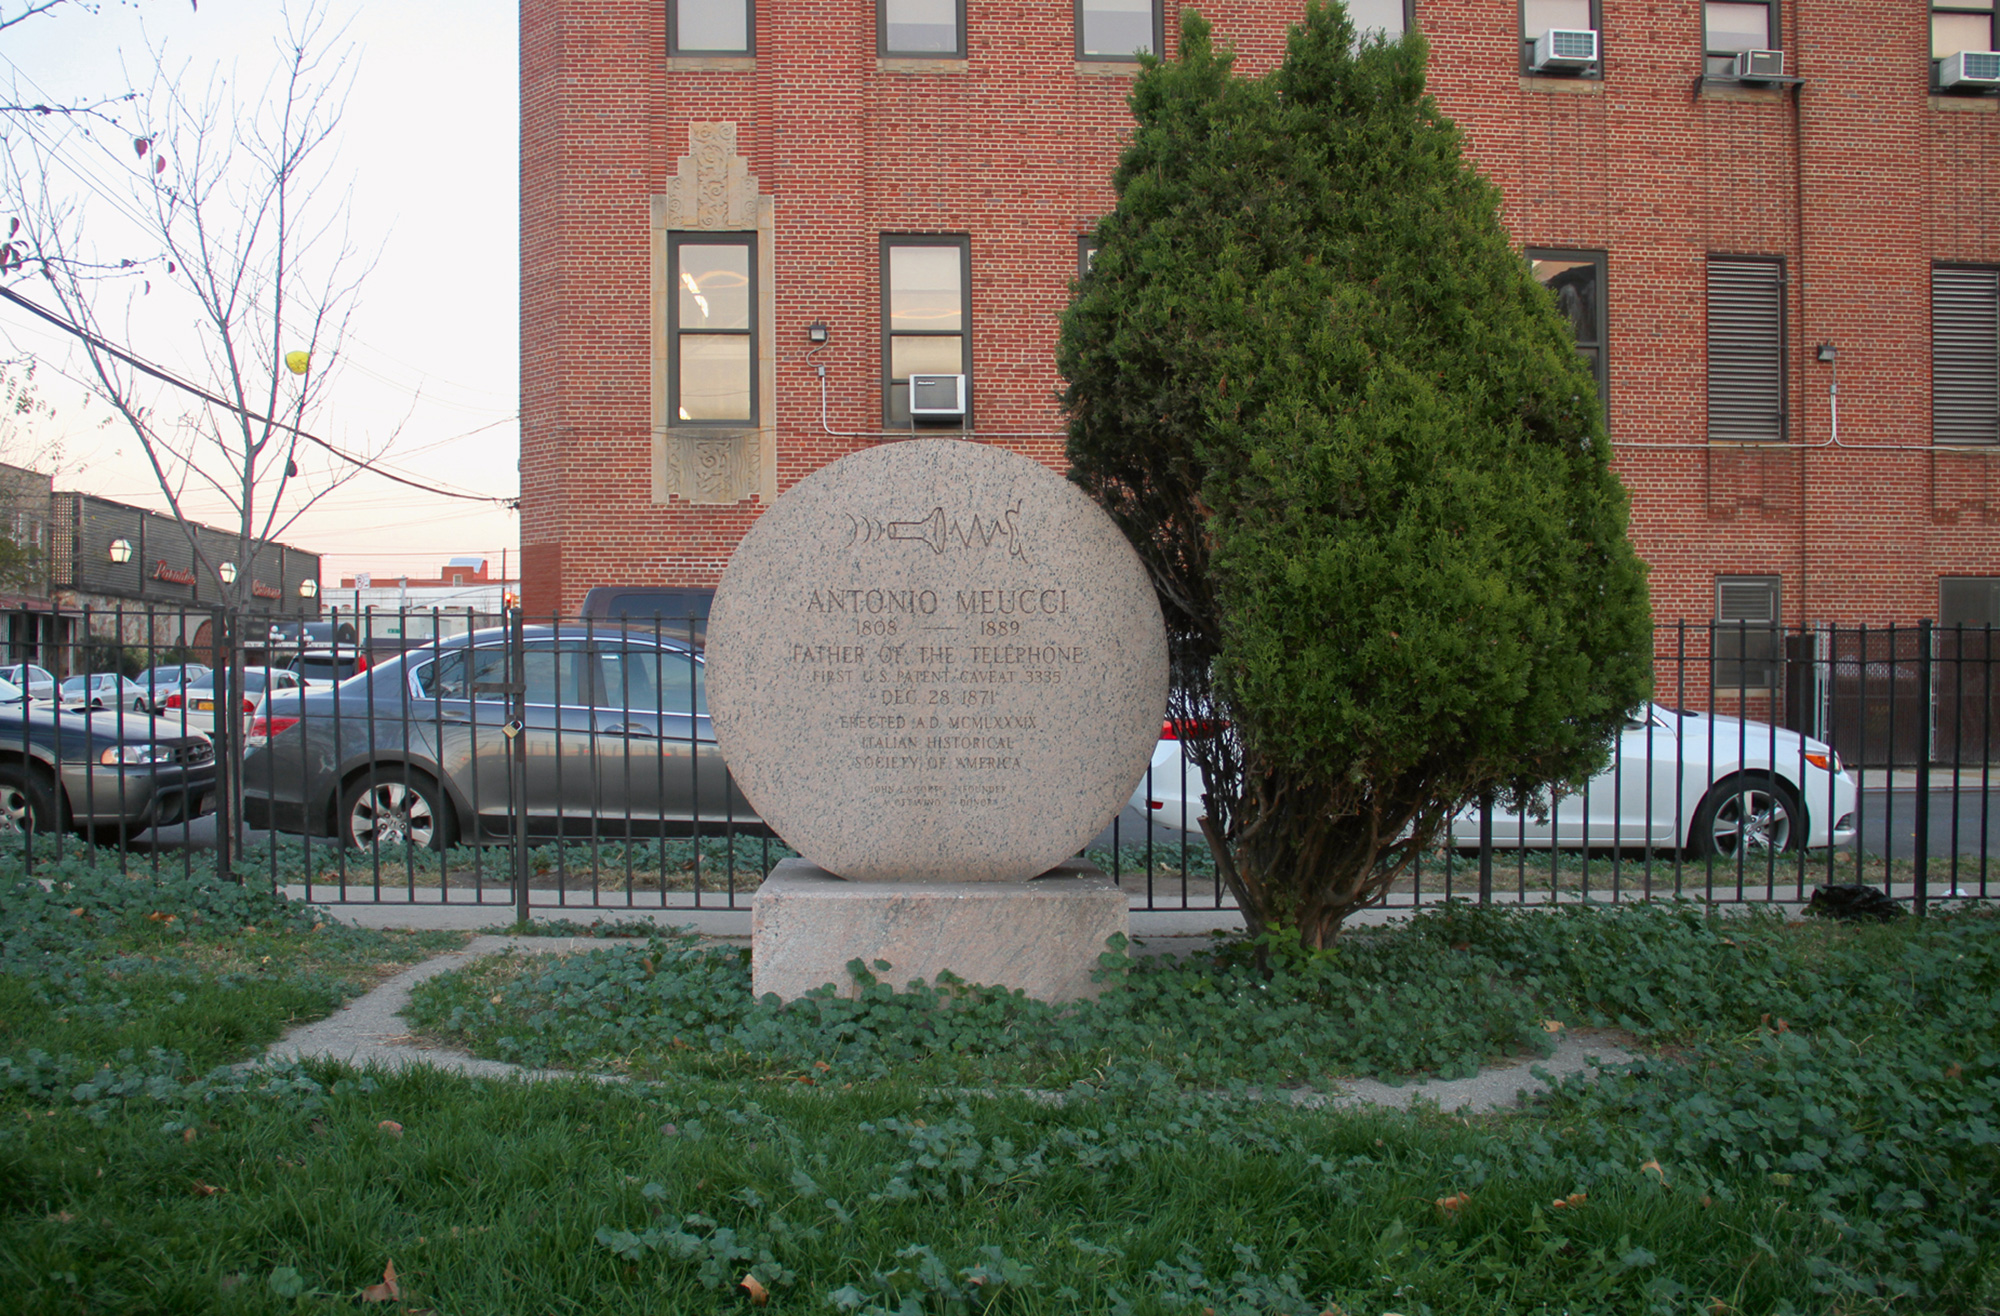 Not entirely forgotten. The memorial to Antonio Meucci, Meucci Triangle, south Brooklyn. Photo William Simpson.